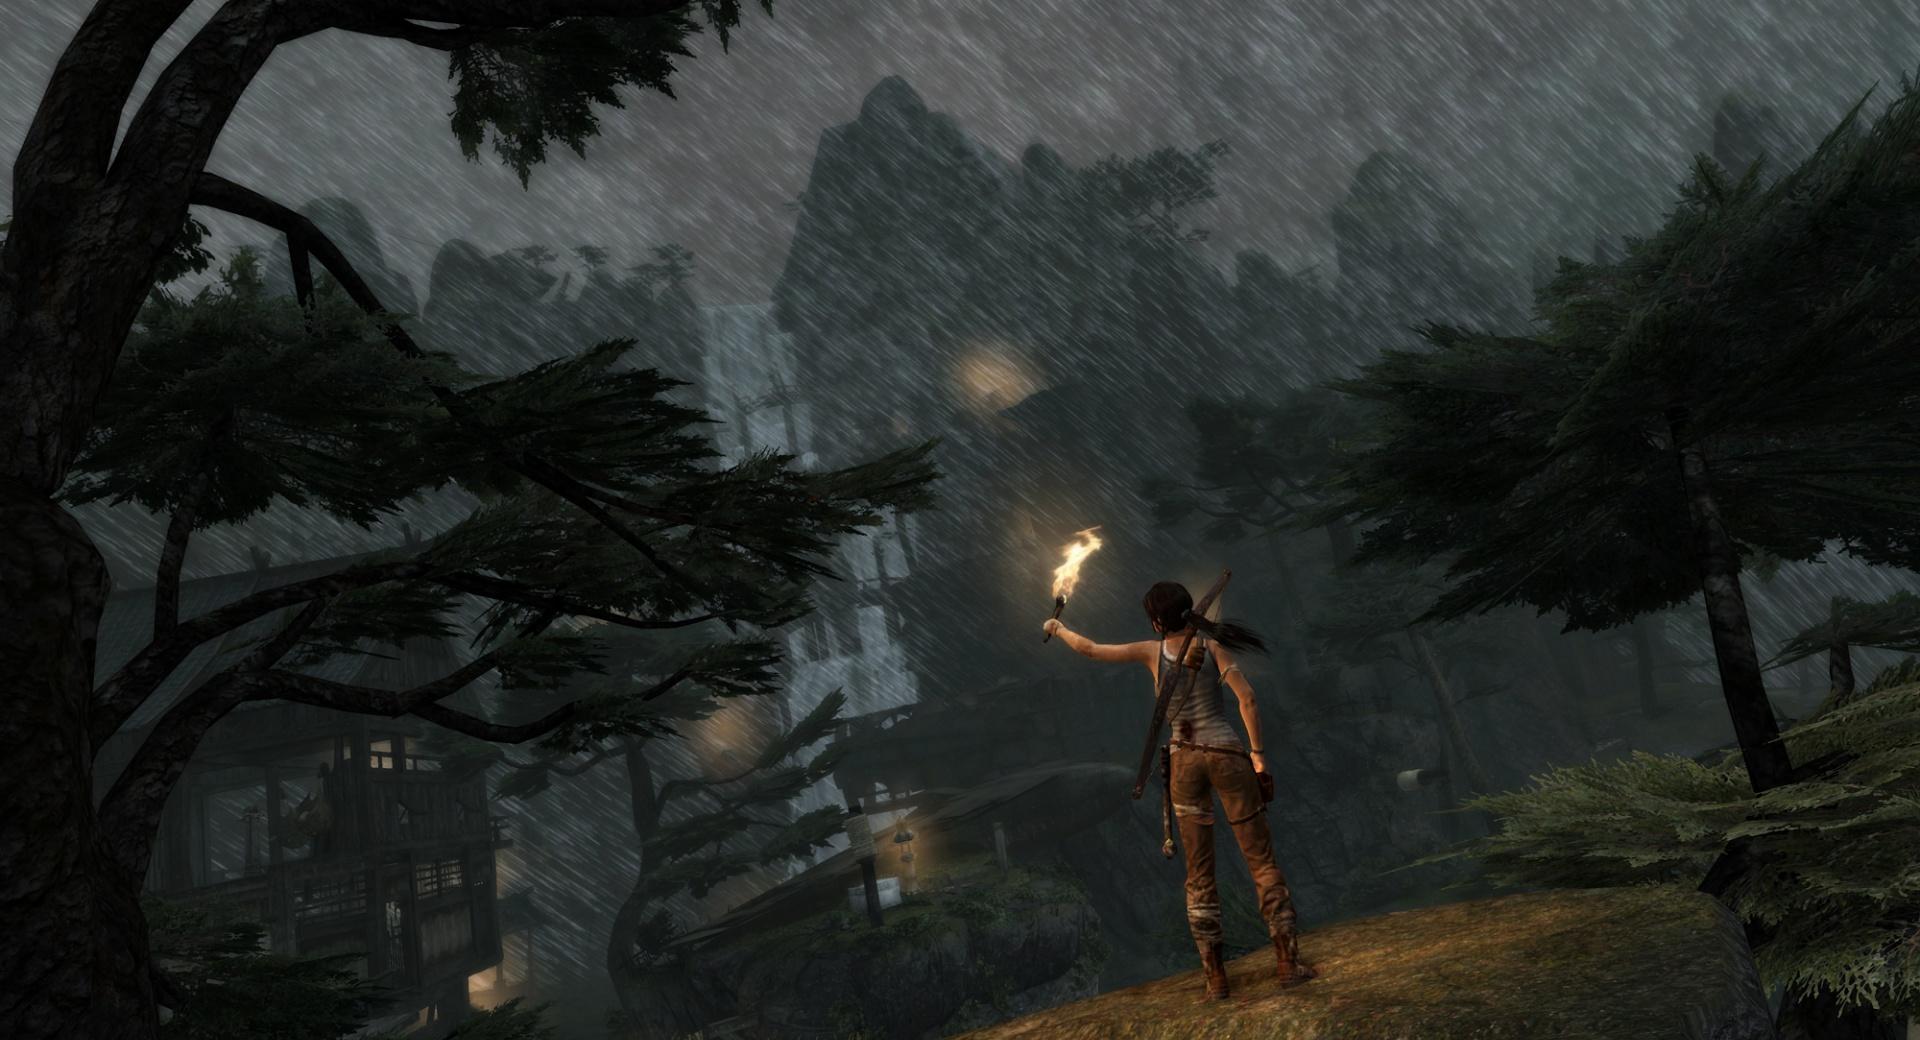 Lara Croft in the Rain (Tomb Raider 2013) at 1024 x 1024 iPad size wallpapers HD quality